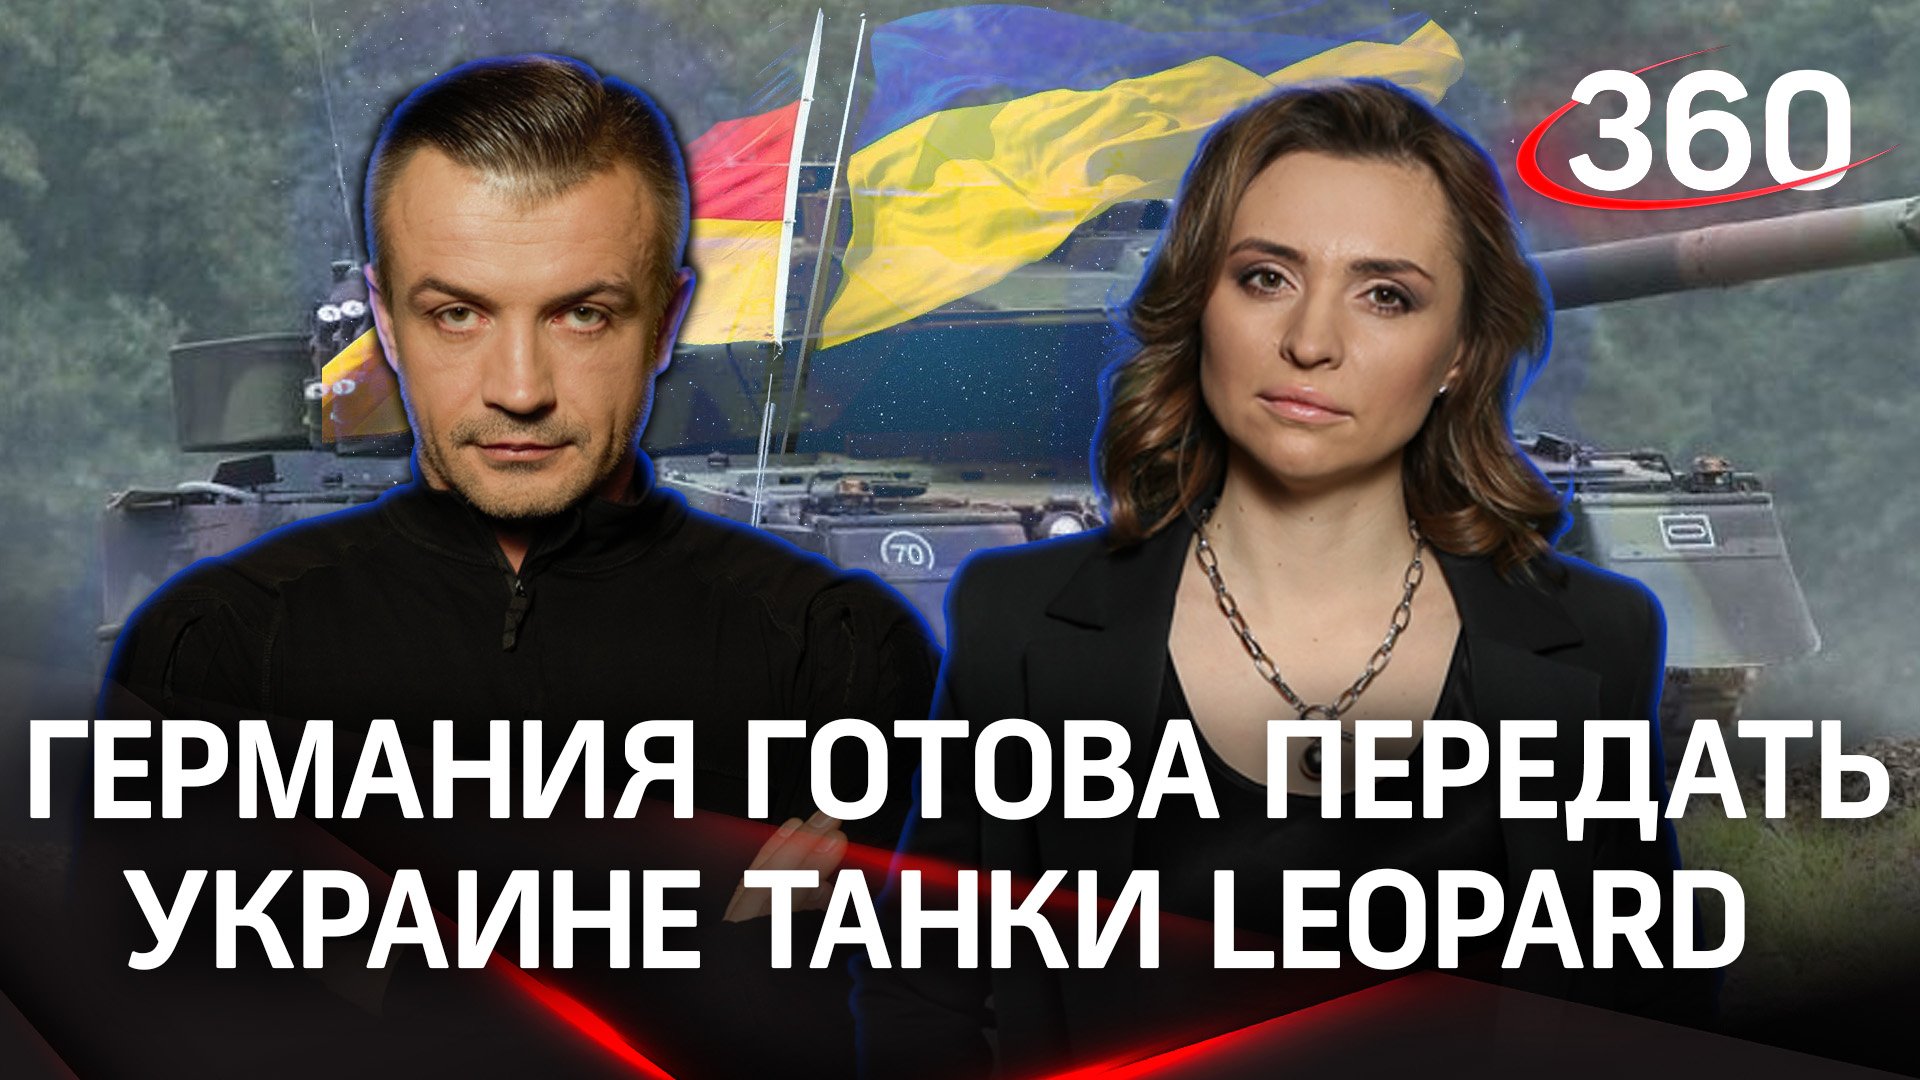 Немецкие танки Leopard для Украины| Екатерина Малашенко и Антон Шеcтаков